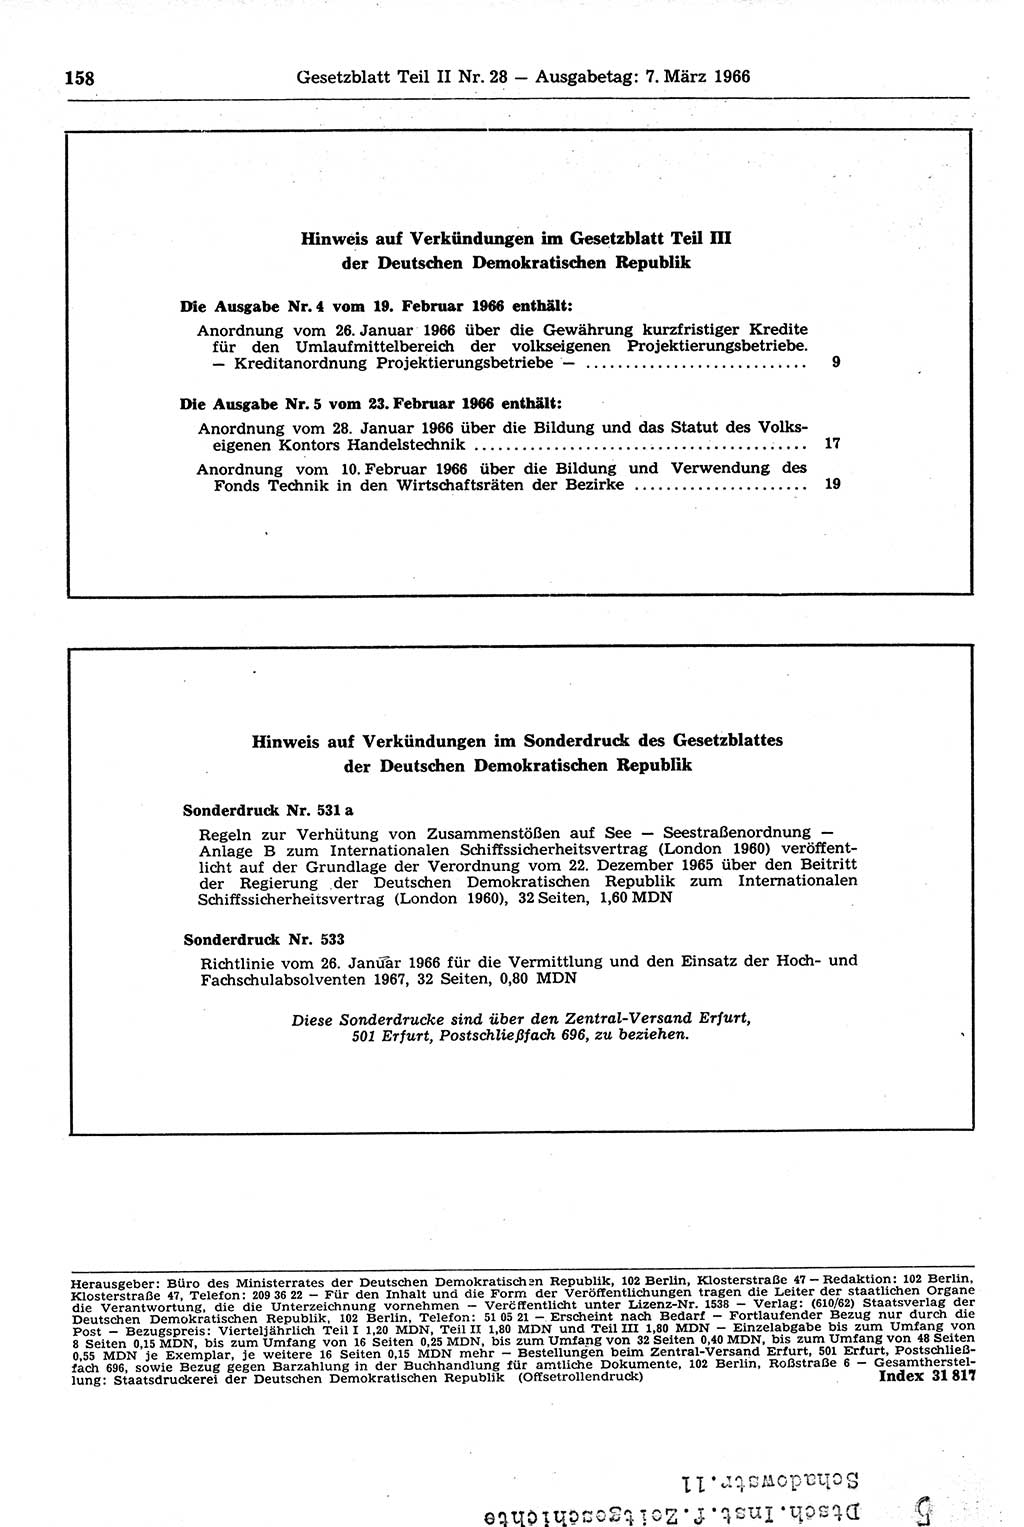 Gesetzblatt (GBl.) der Deutschen Demokratischen Republik (DDR) Teil ⅠⅠ 1966, Seite 158 (GBl. DDR ⅠⅠ 1966, S. 158)